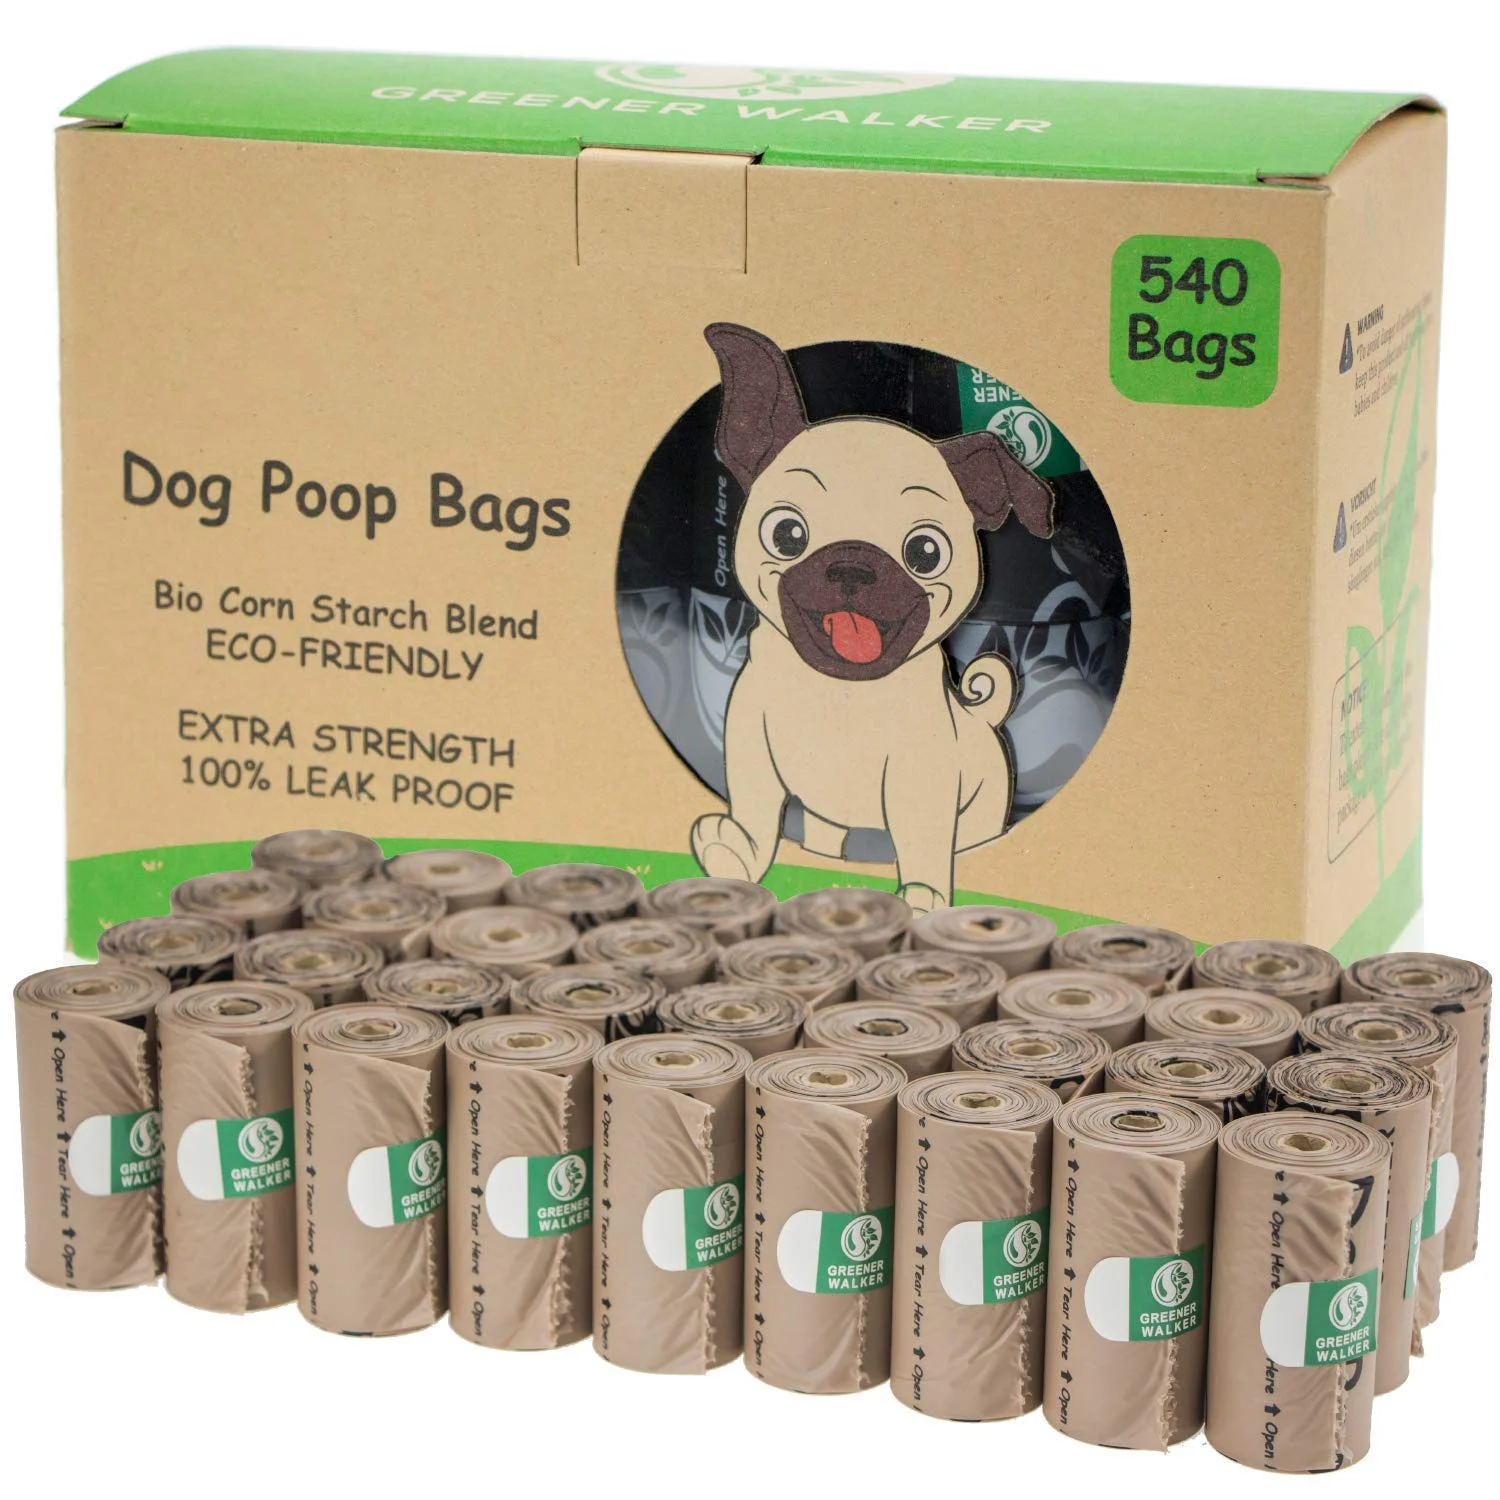 Биоразлагаемые пакеты для собак. Биоразлагаемый пакет для собак. Мешок для собаки для фекалий. Dog пакеты биоразлагаемые. Пакетики для сбора собачьих экскрементов.